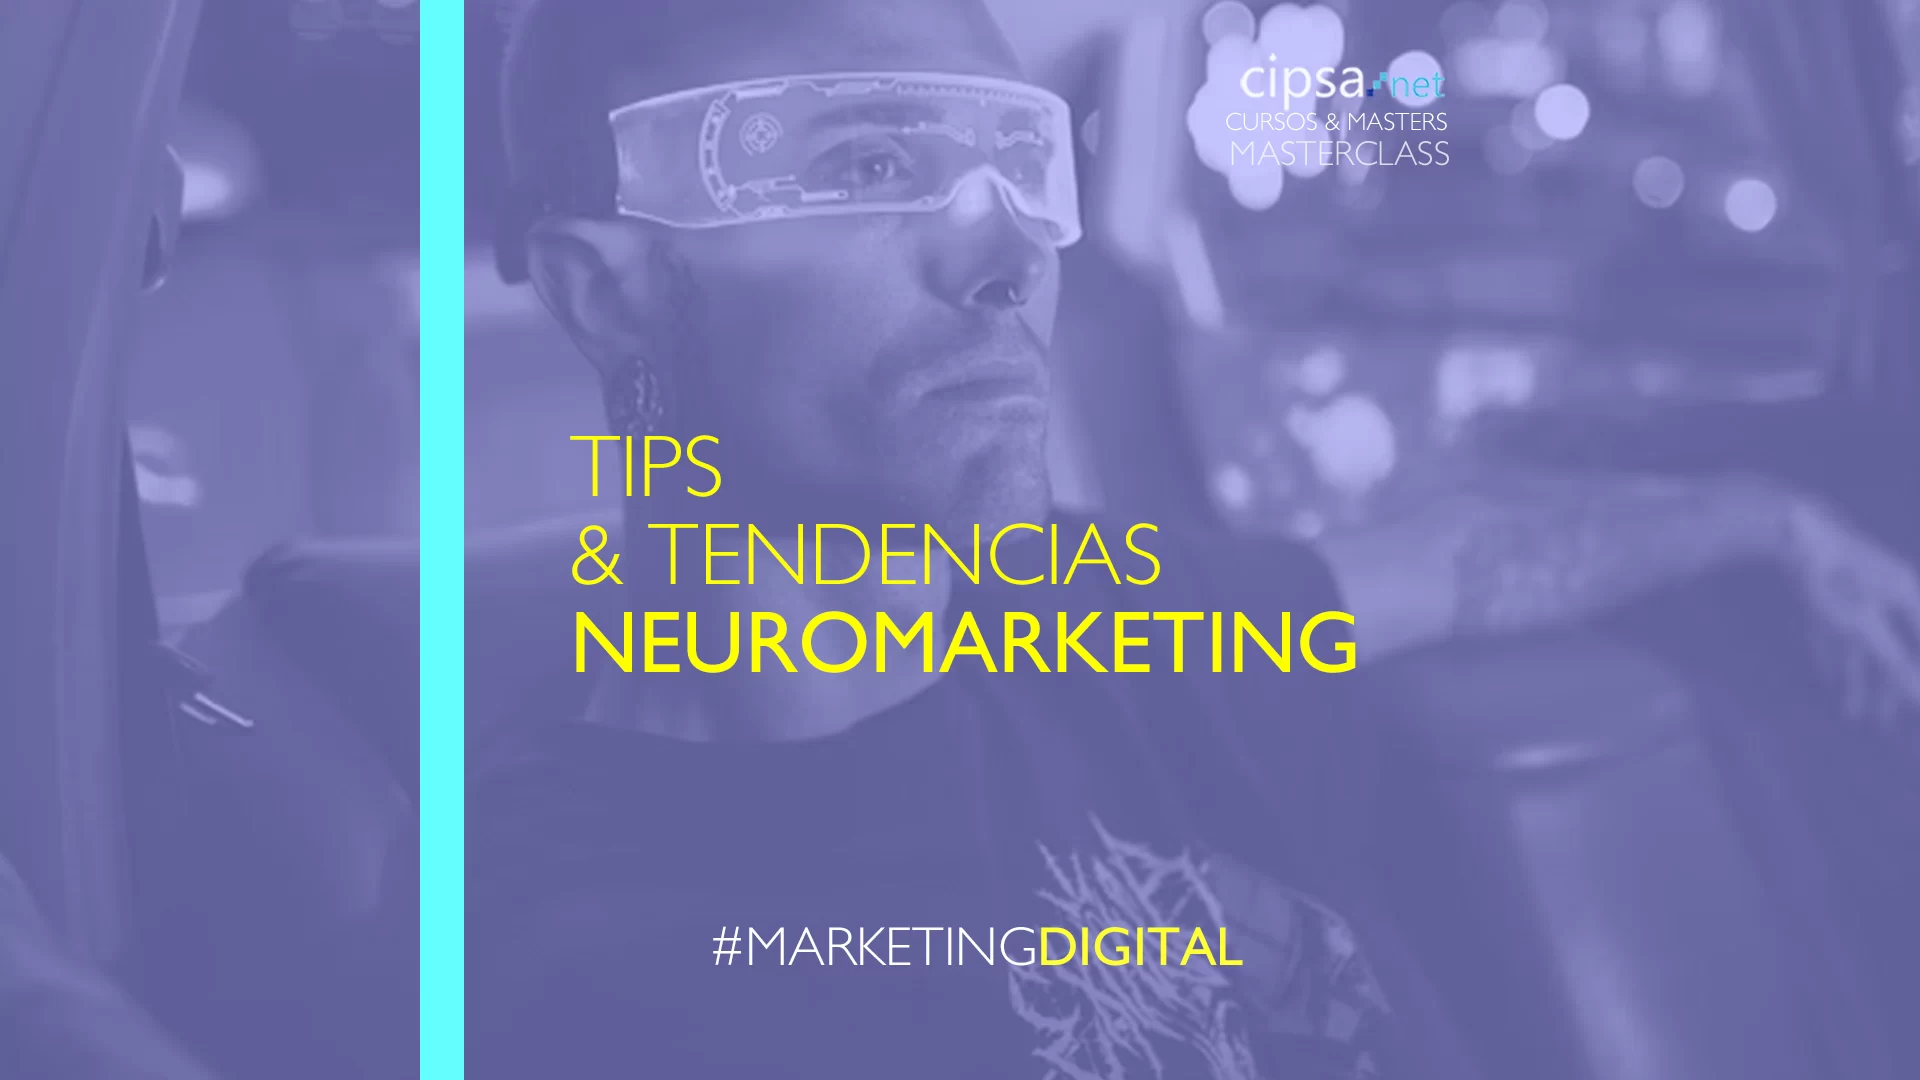 Masterclass especial Tips Neuromarketing & psicología social en la era digital. Aprovecha estos conocimientos para aplicarlos en tus proyectos digitales.